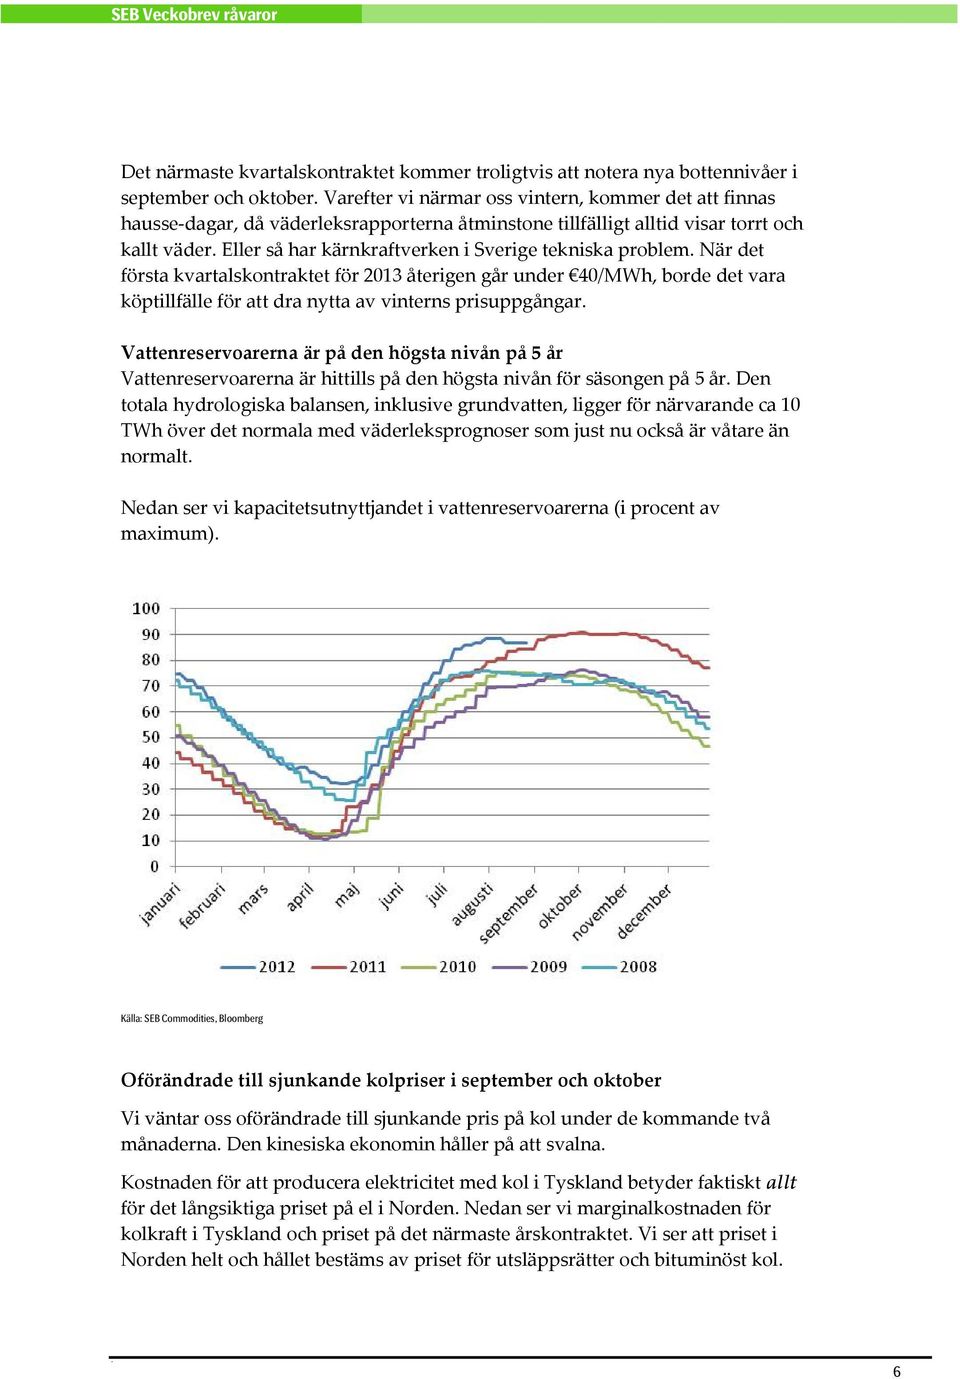 Eller så har kärnkraftverken i Sverige tekniska problem. När det första kvartalskontraktet för 2013 återigen går under 40/MWh, borde det vara köptillfälle för att dra nytta av vinterns prisuppgångar.